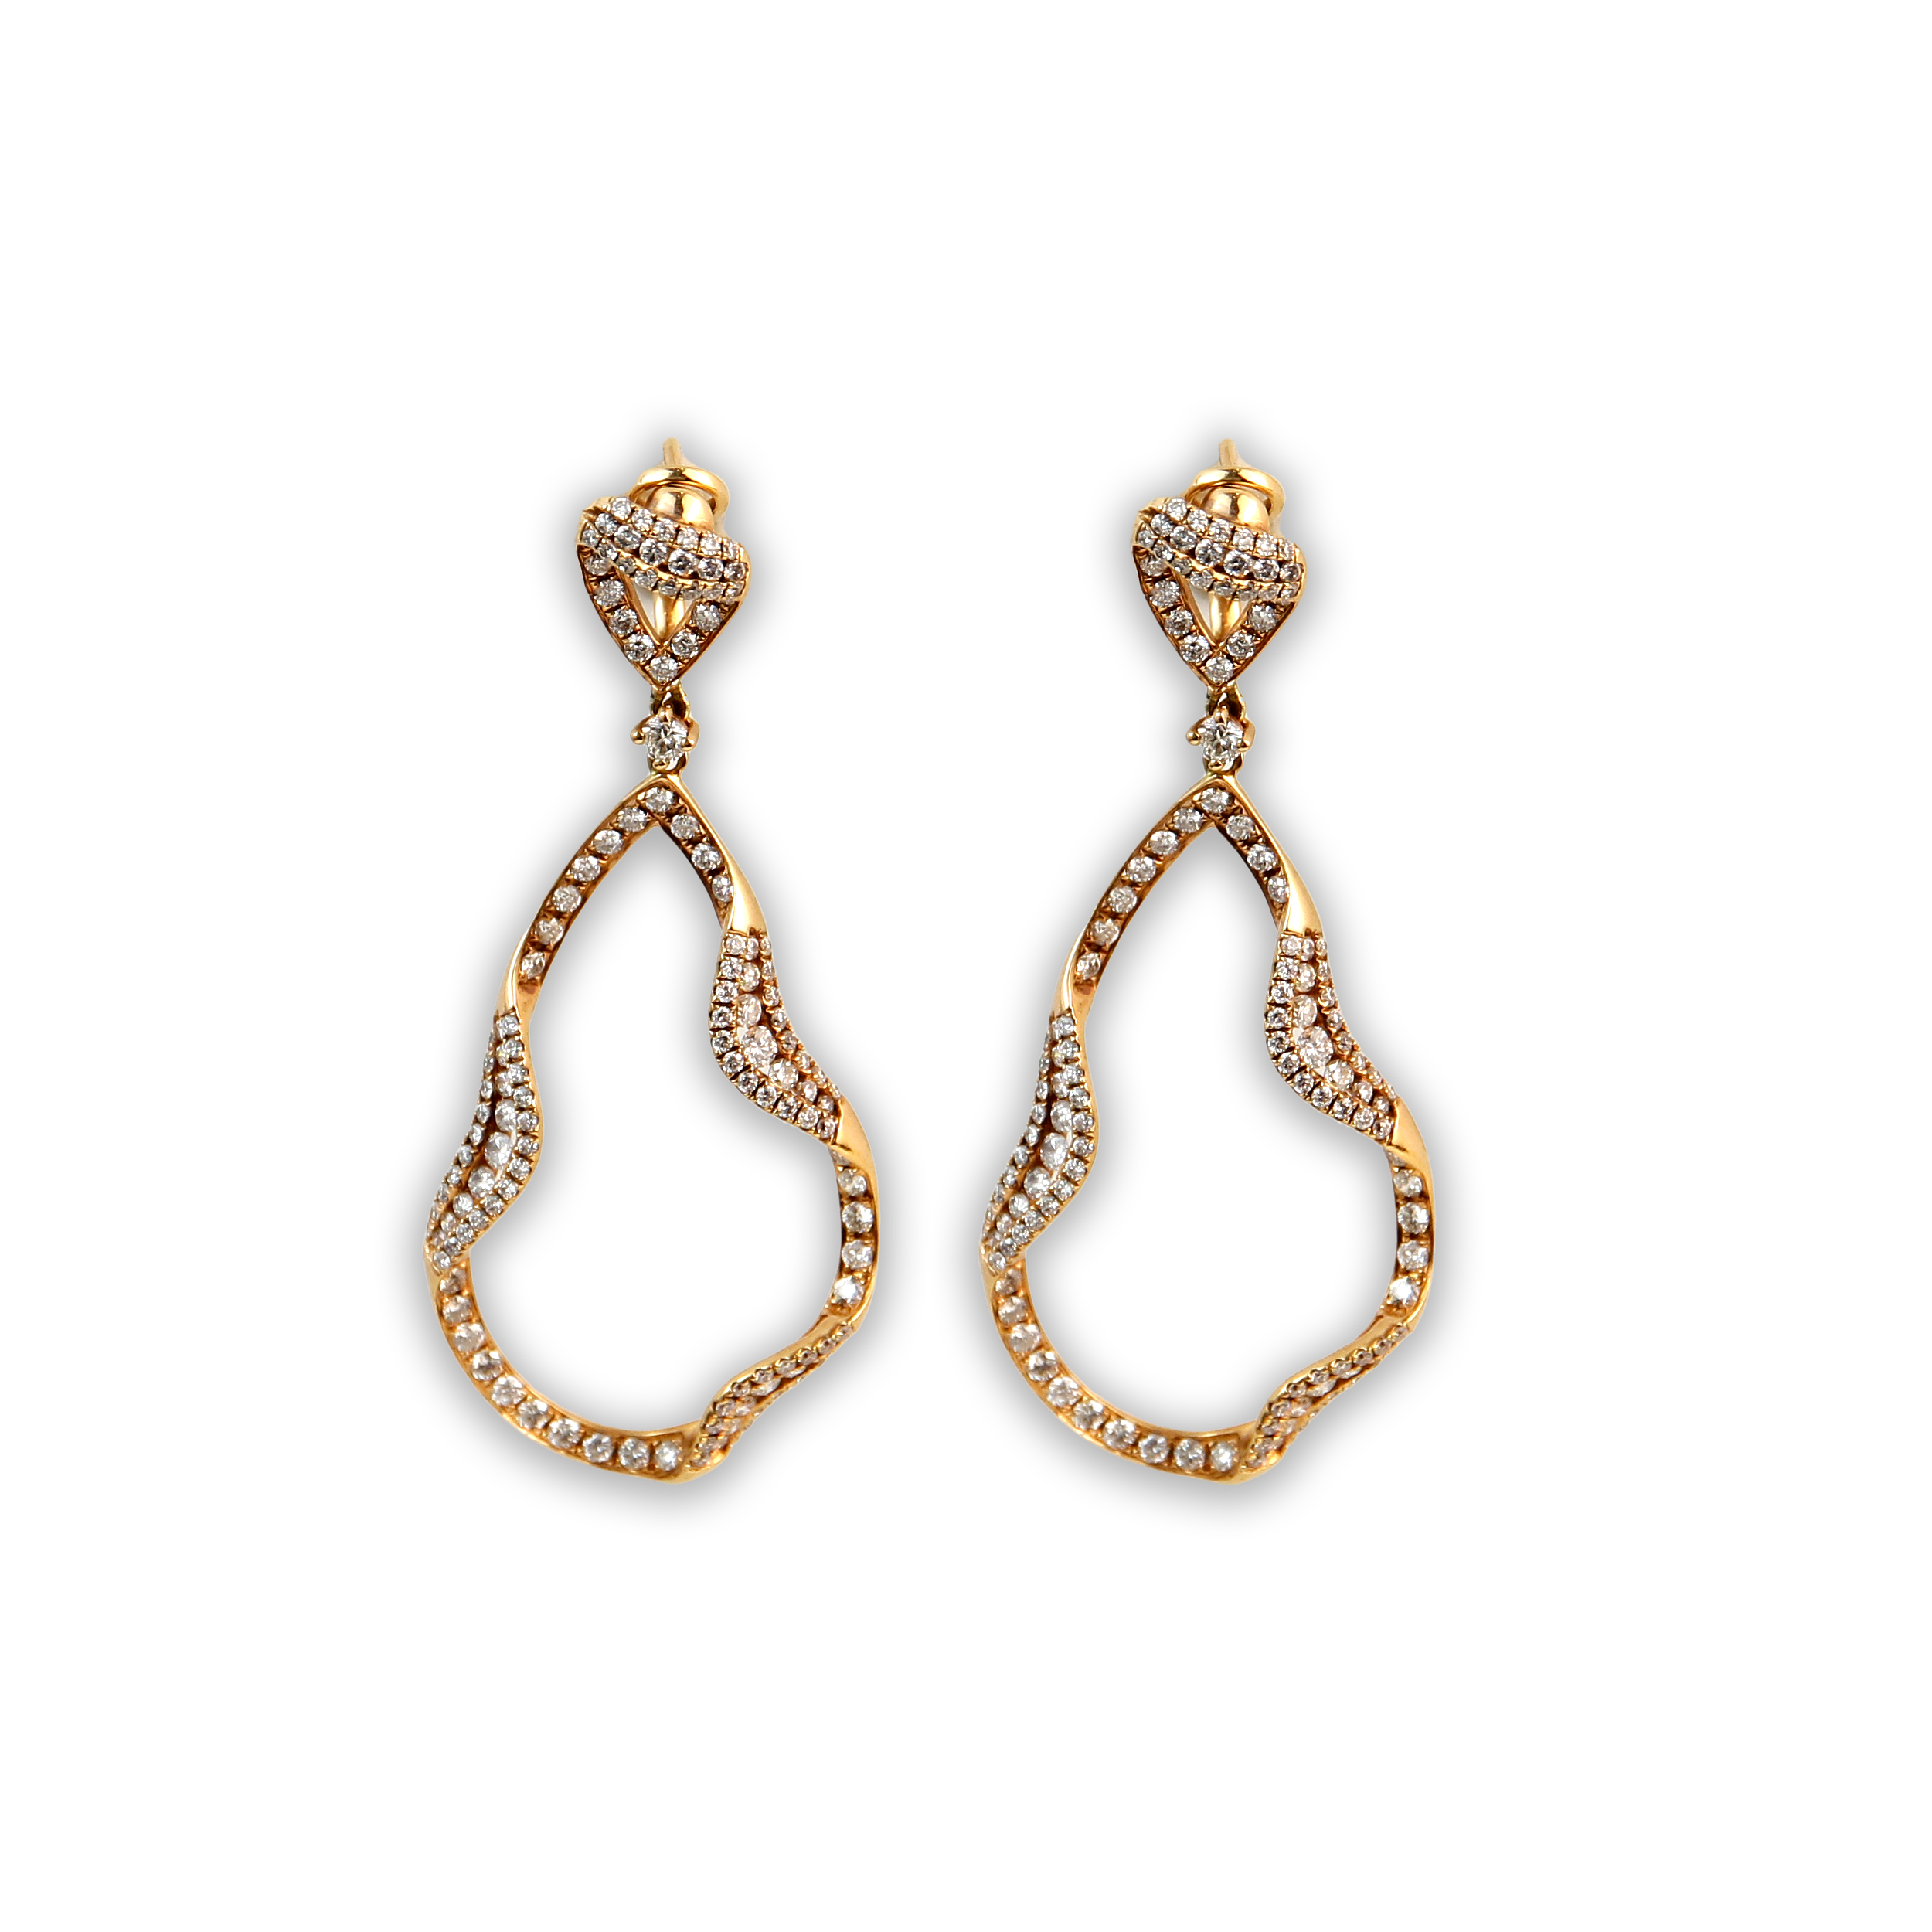 ECJ Collection 18K Rose Gold 2.91ctw Diamond Earrings